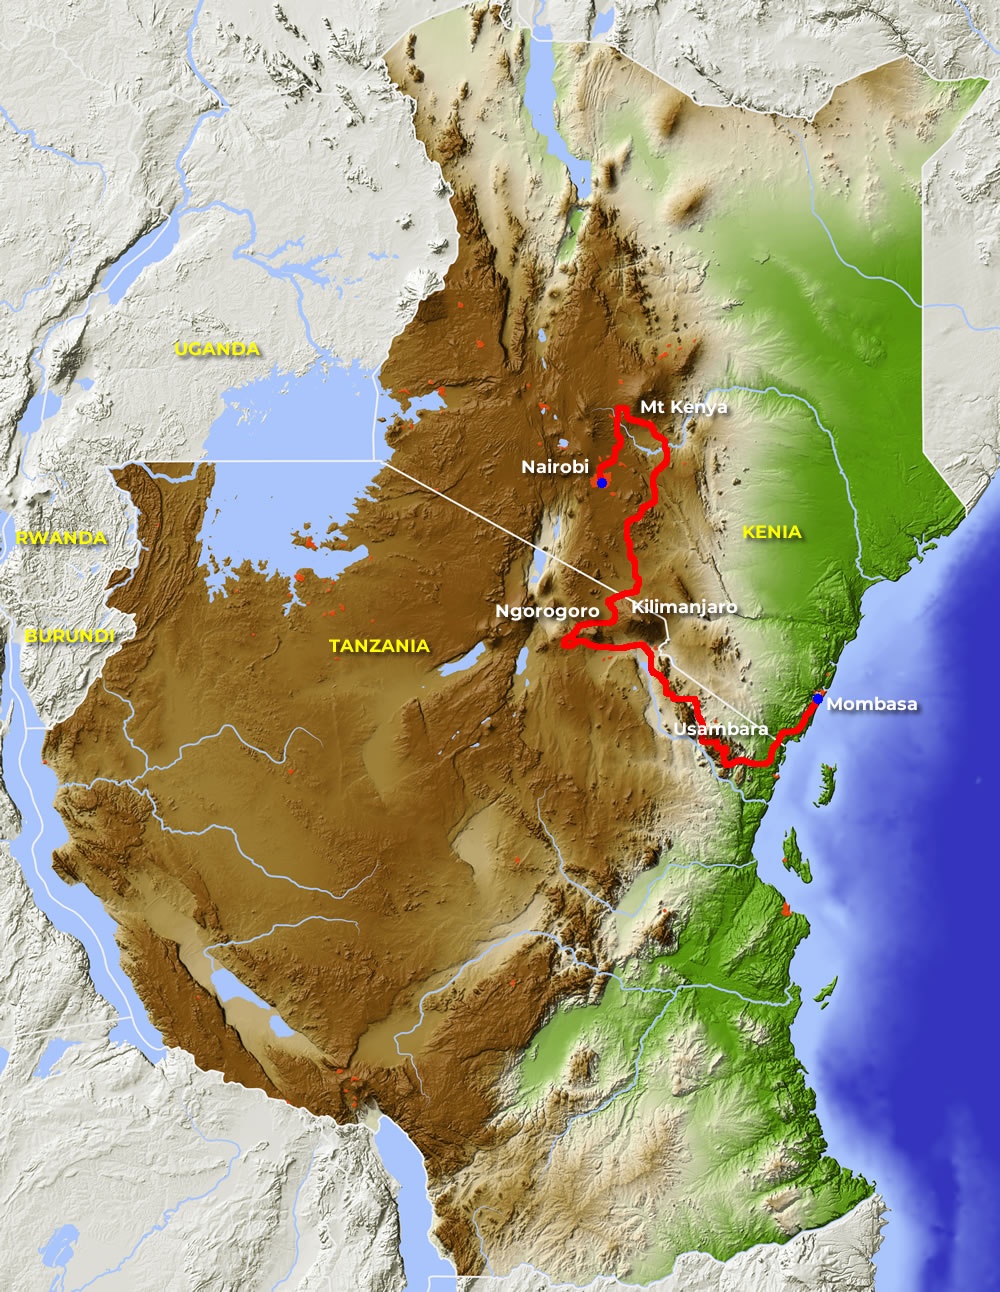 tourhub | Motor Trails | 21 Days Kenya Kilimanjaro Guided Motorcycle Tour | Tour Map